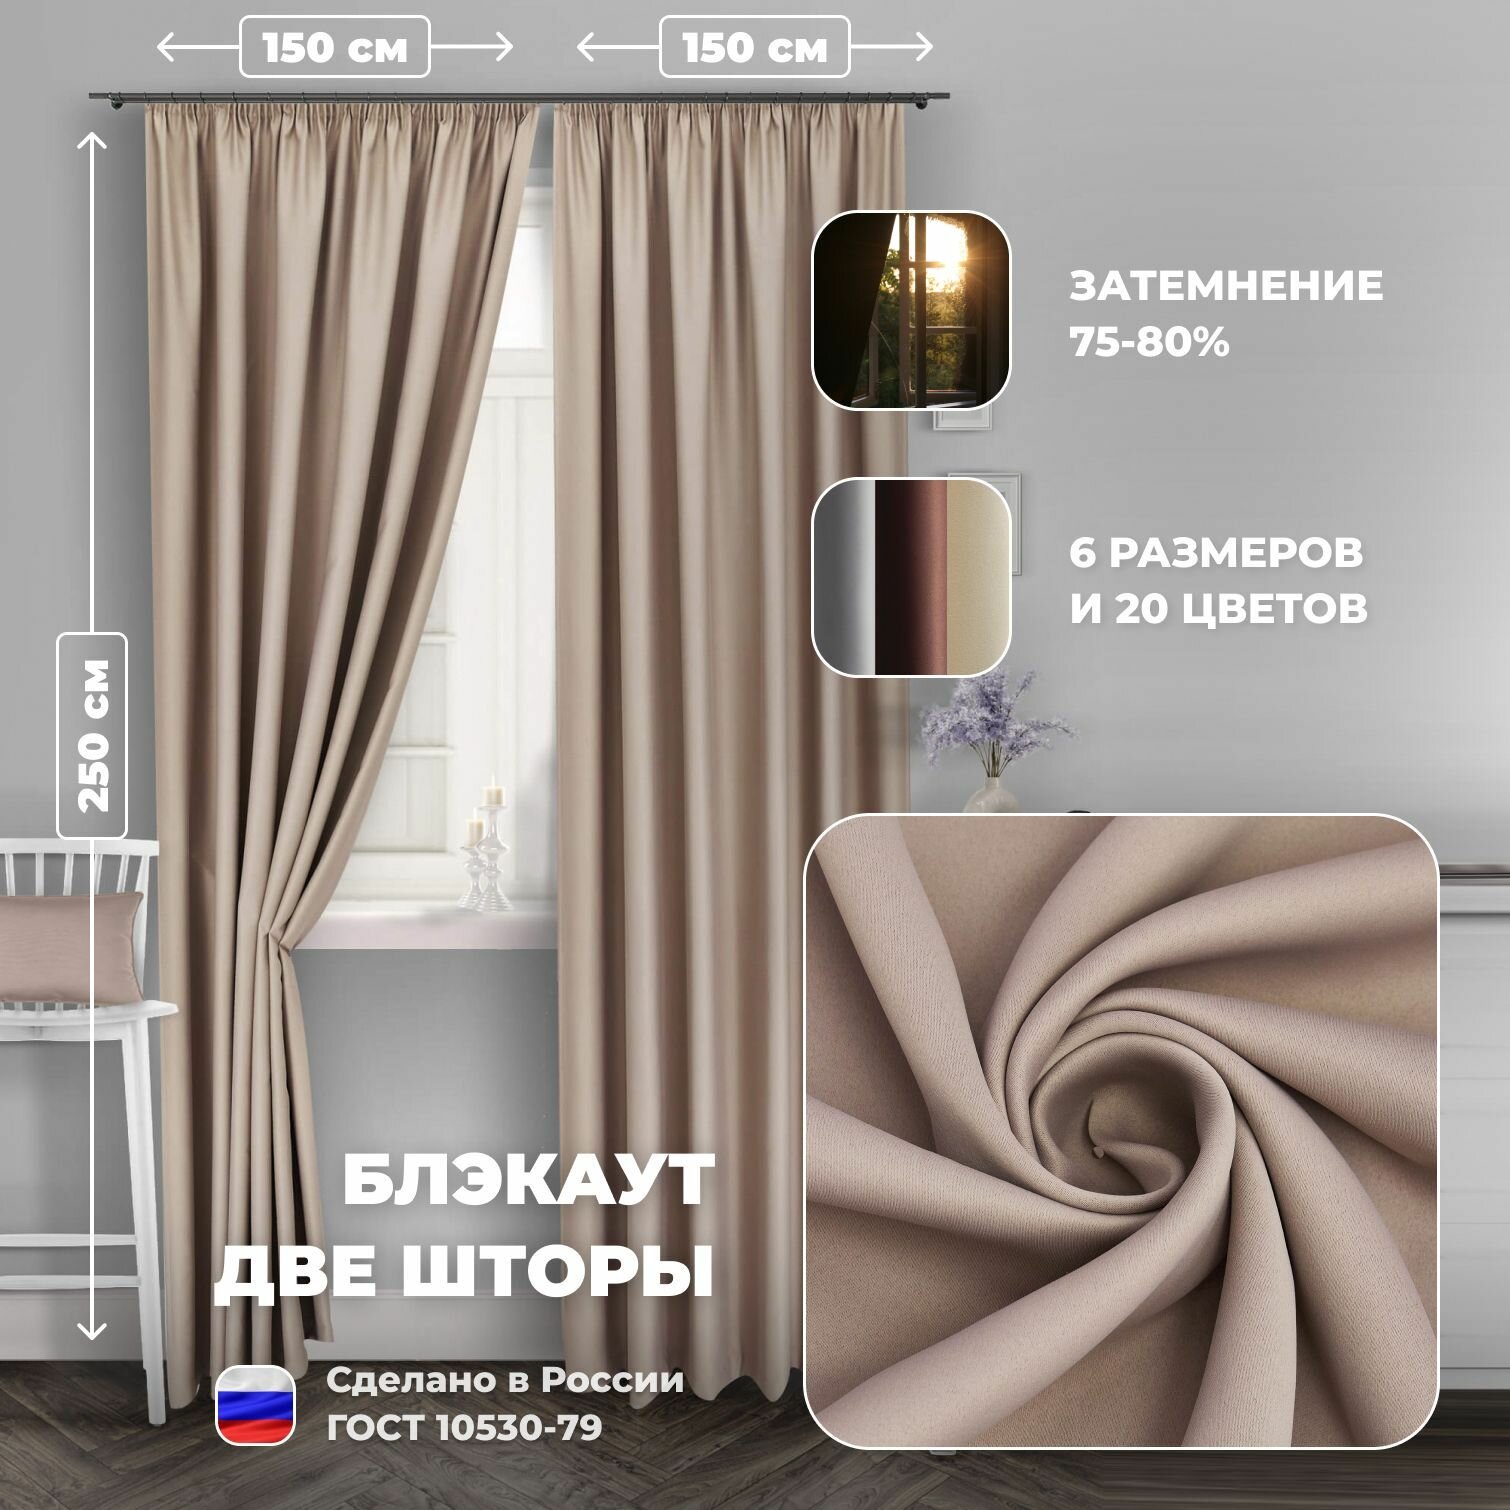 Комплект штор для комнаты Блэкаут однотонный матовый Shtoraland на ленте для крючков две портьеры. Общий размер 500x270 персиковый цвет